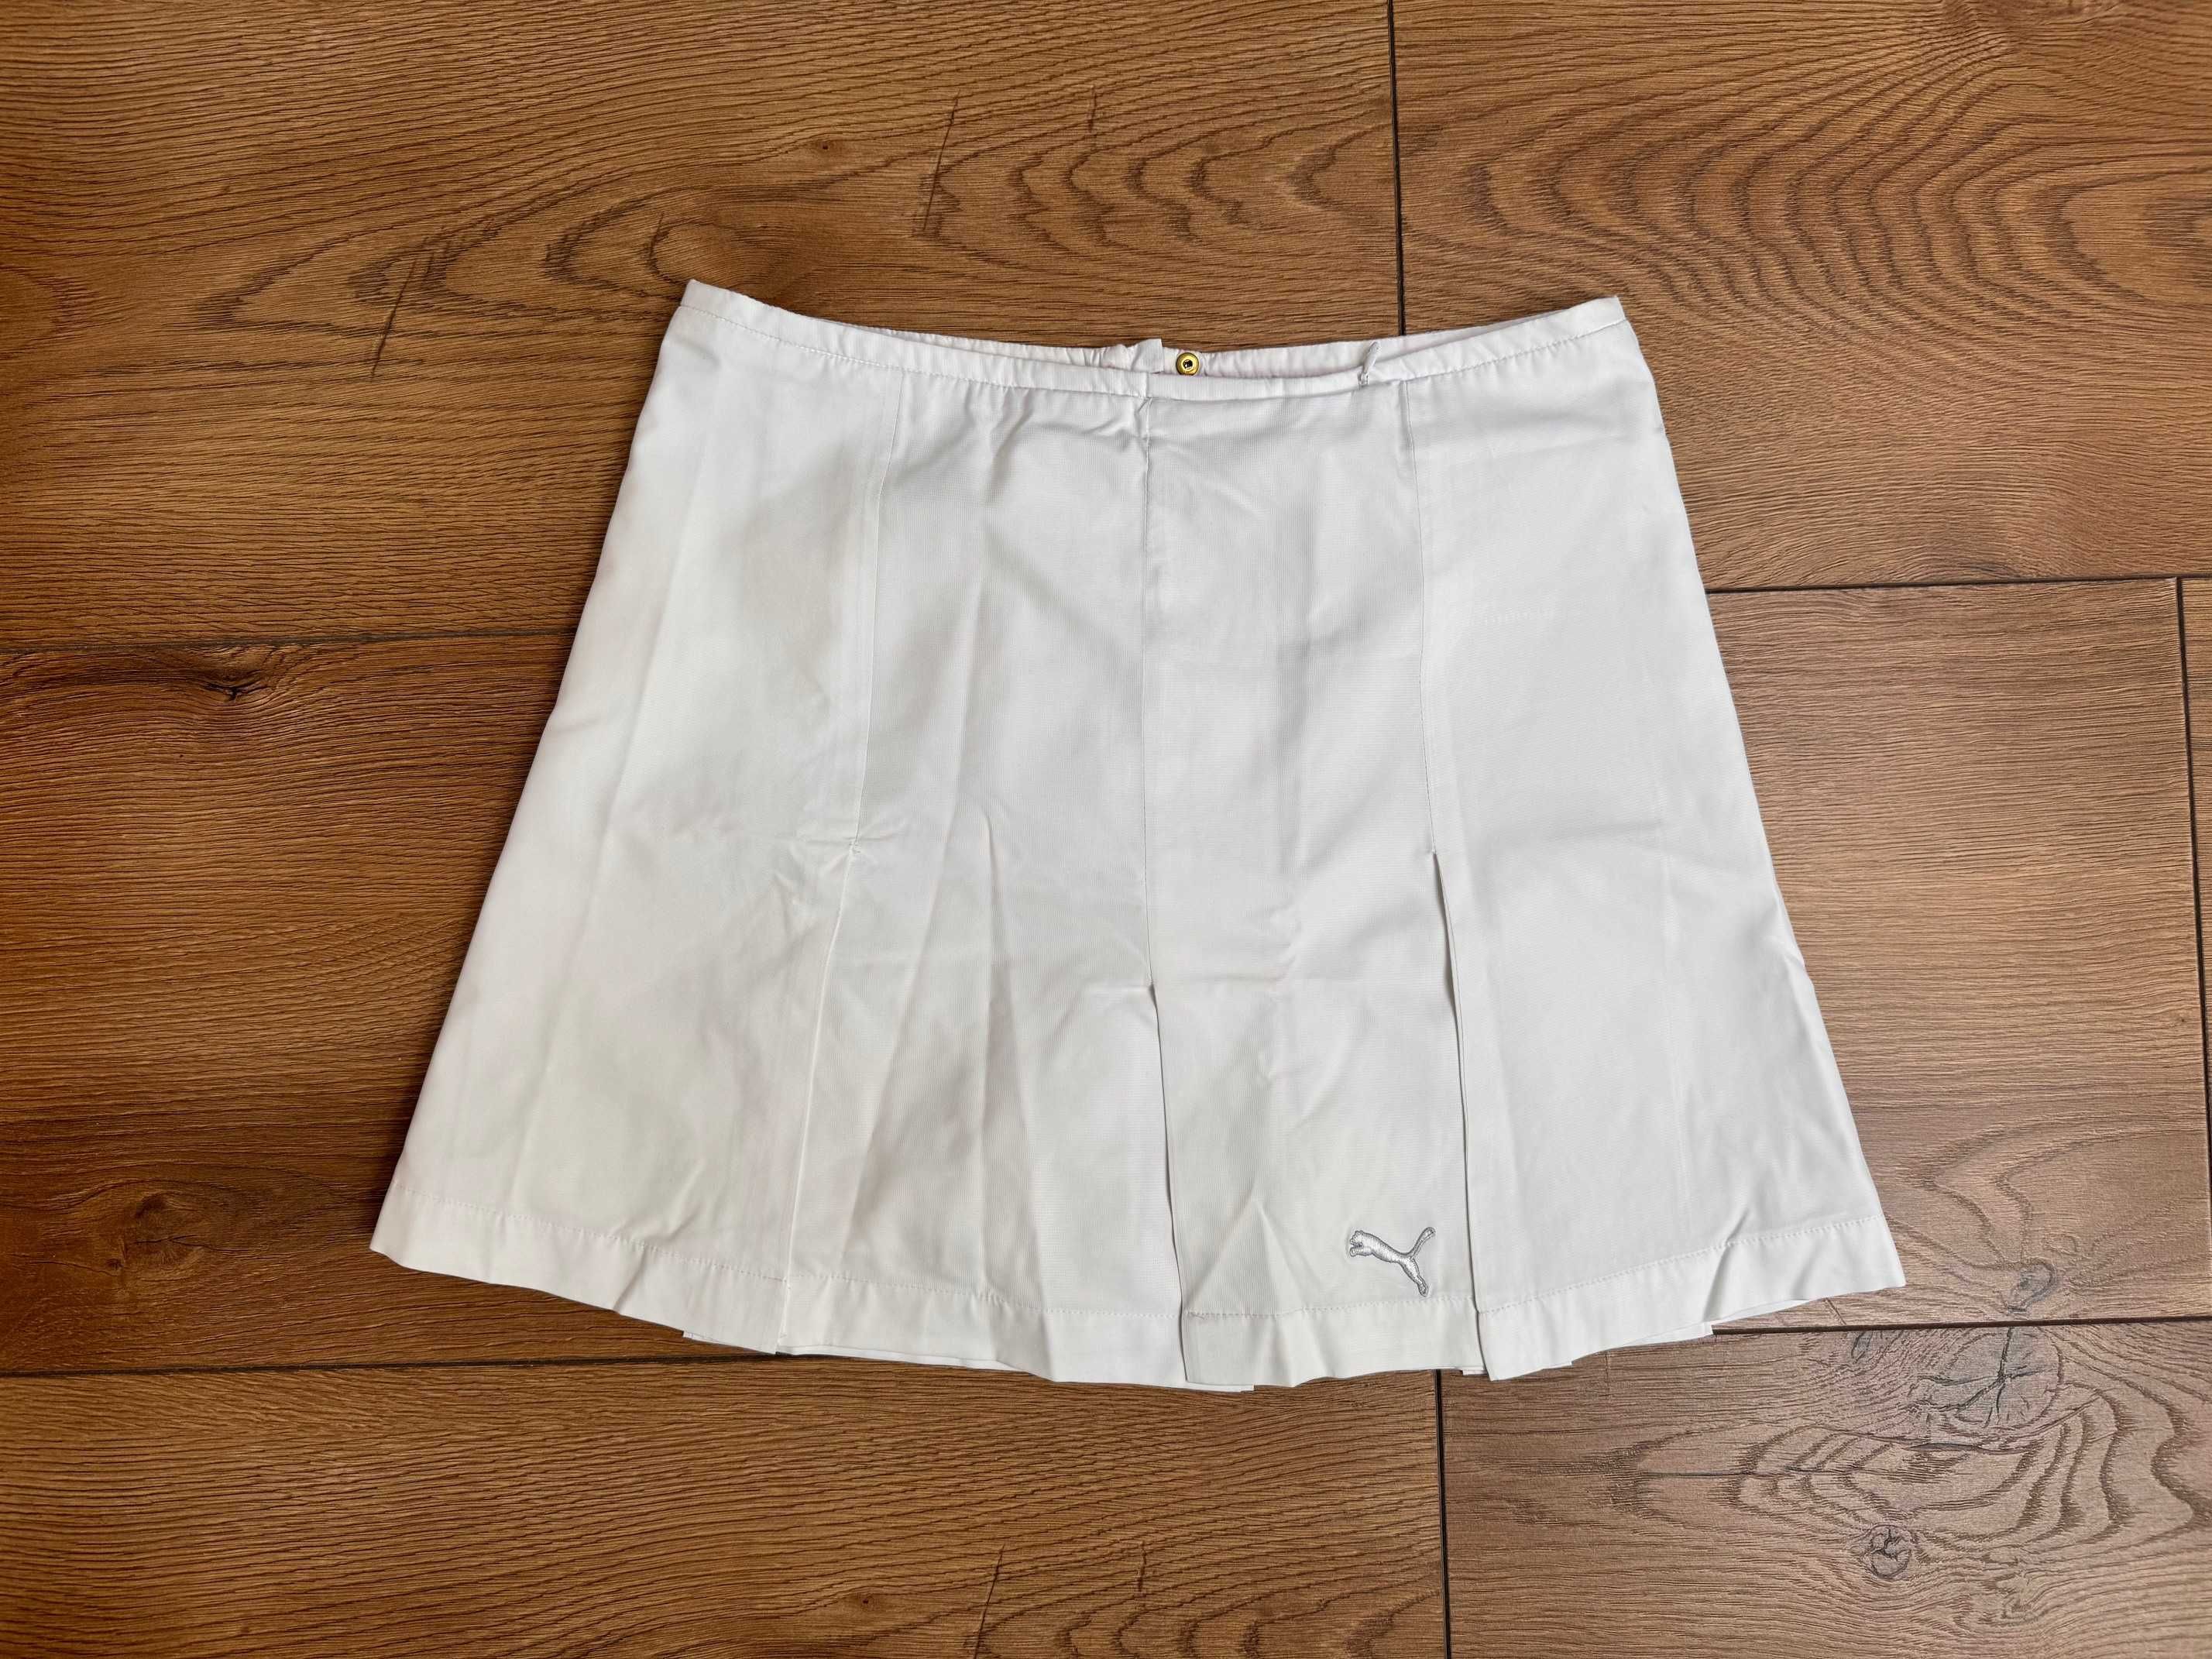 Puma spodenki damskie tenisowe białe spódniczka rozmiar S 36